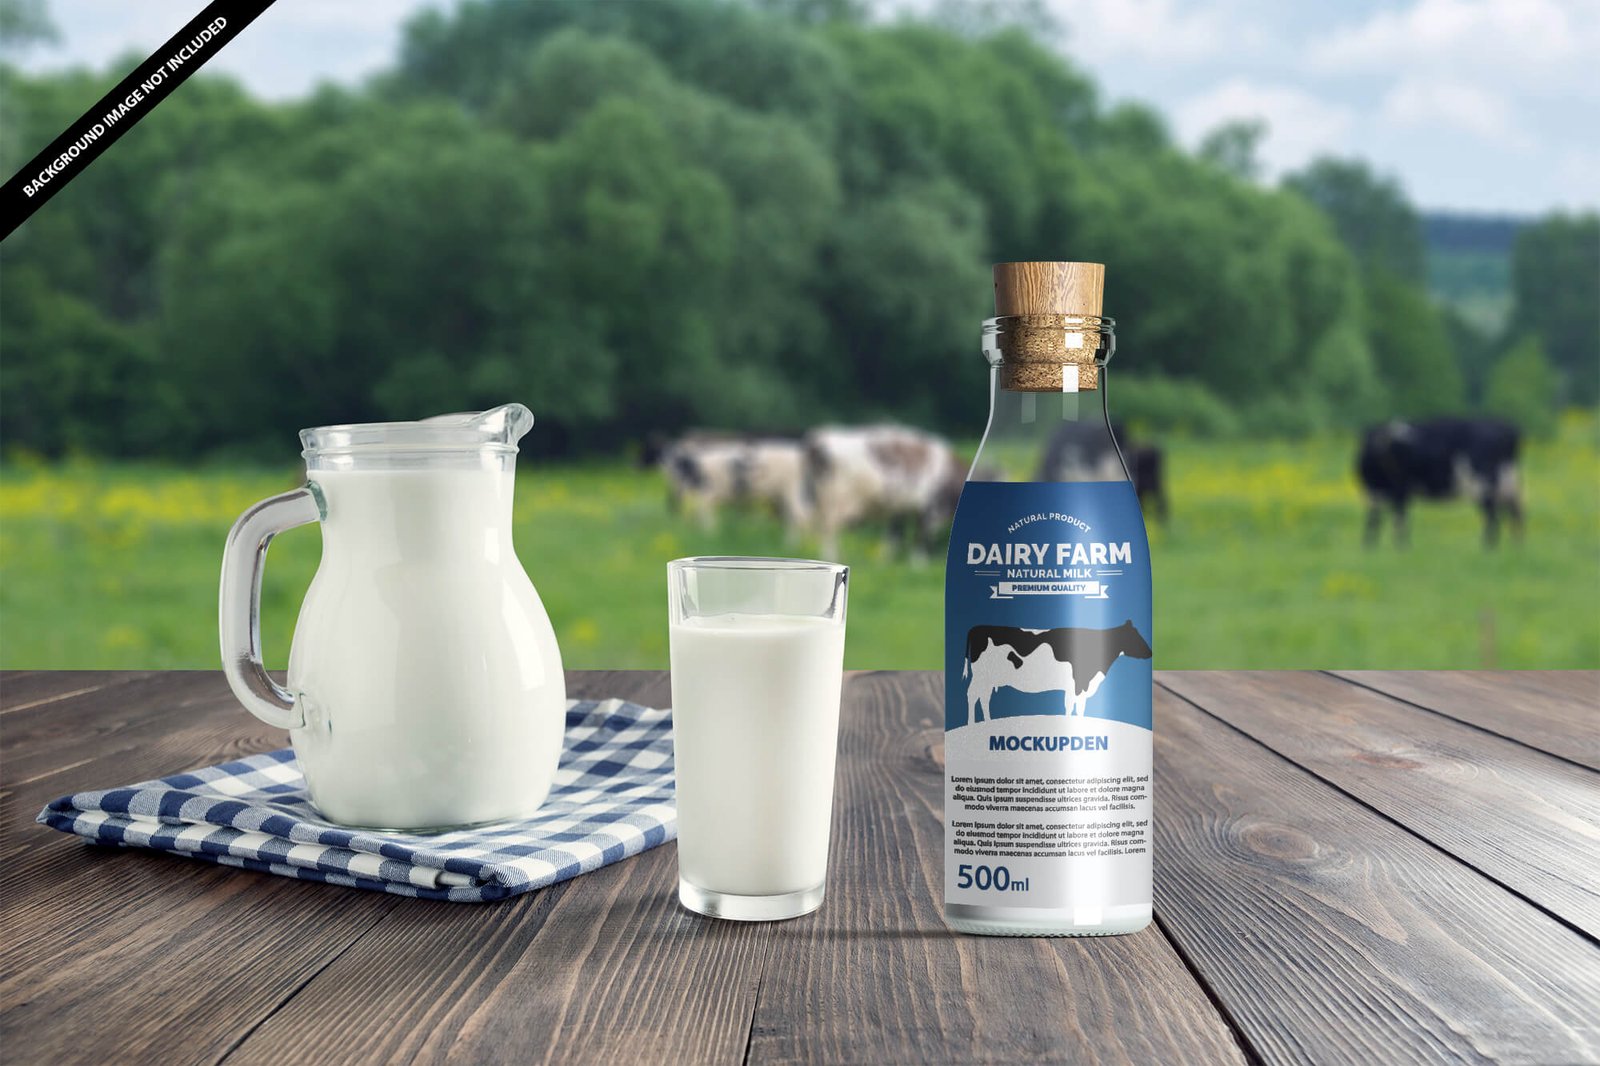 Download Milk Bottle Mockup Free PSD Template - Mockup Den